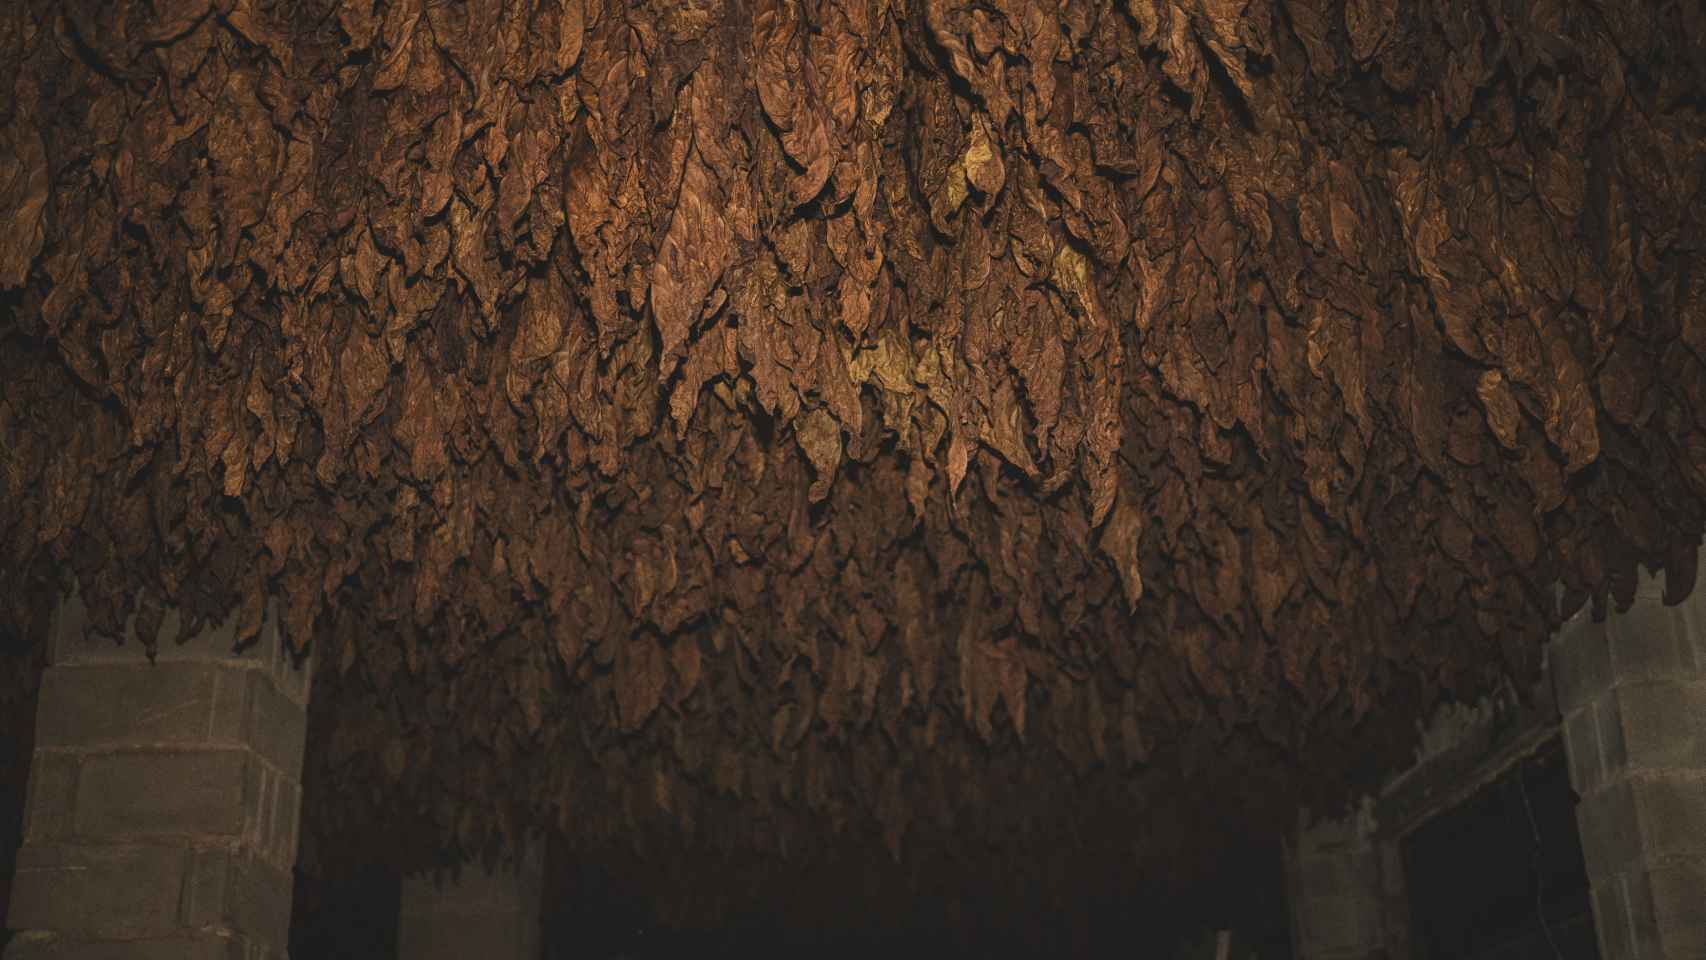 Vista del interior de un secadero de tabaco Kentucky: es mucho más oscuro, se seca mediante lumbre que ahuman el secadero y debe evitar quebrarse para que las hojas sirvan como envoltorios para puros.